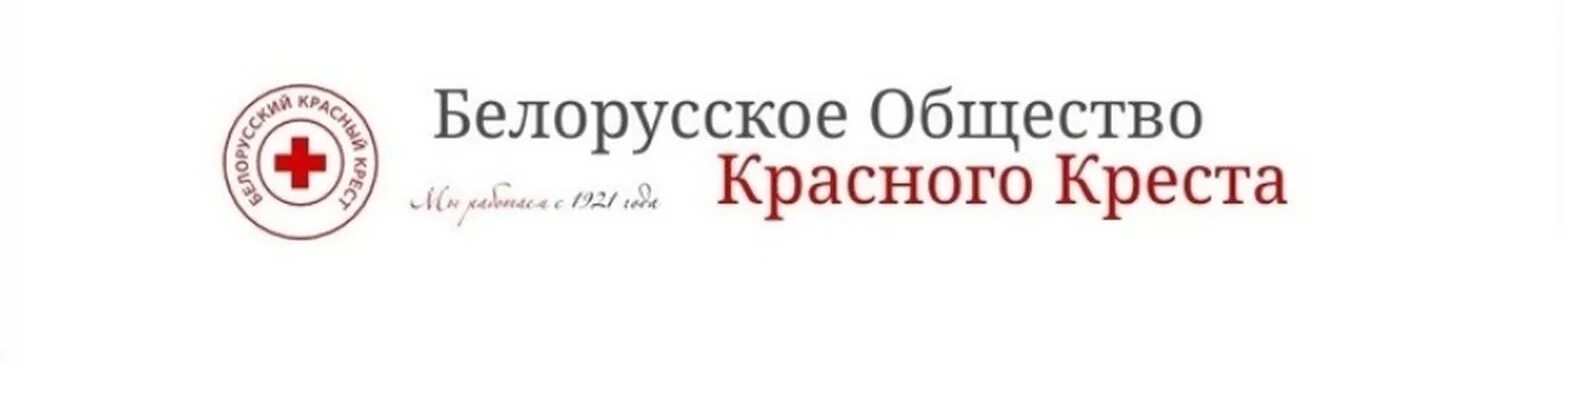 Белорусский красный крест логотип. Белорусское общество красного Креста»,. БОКК. Логотип общественной организации белорусский красный крест.